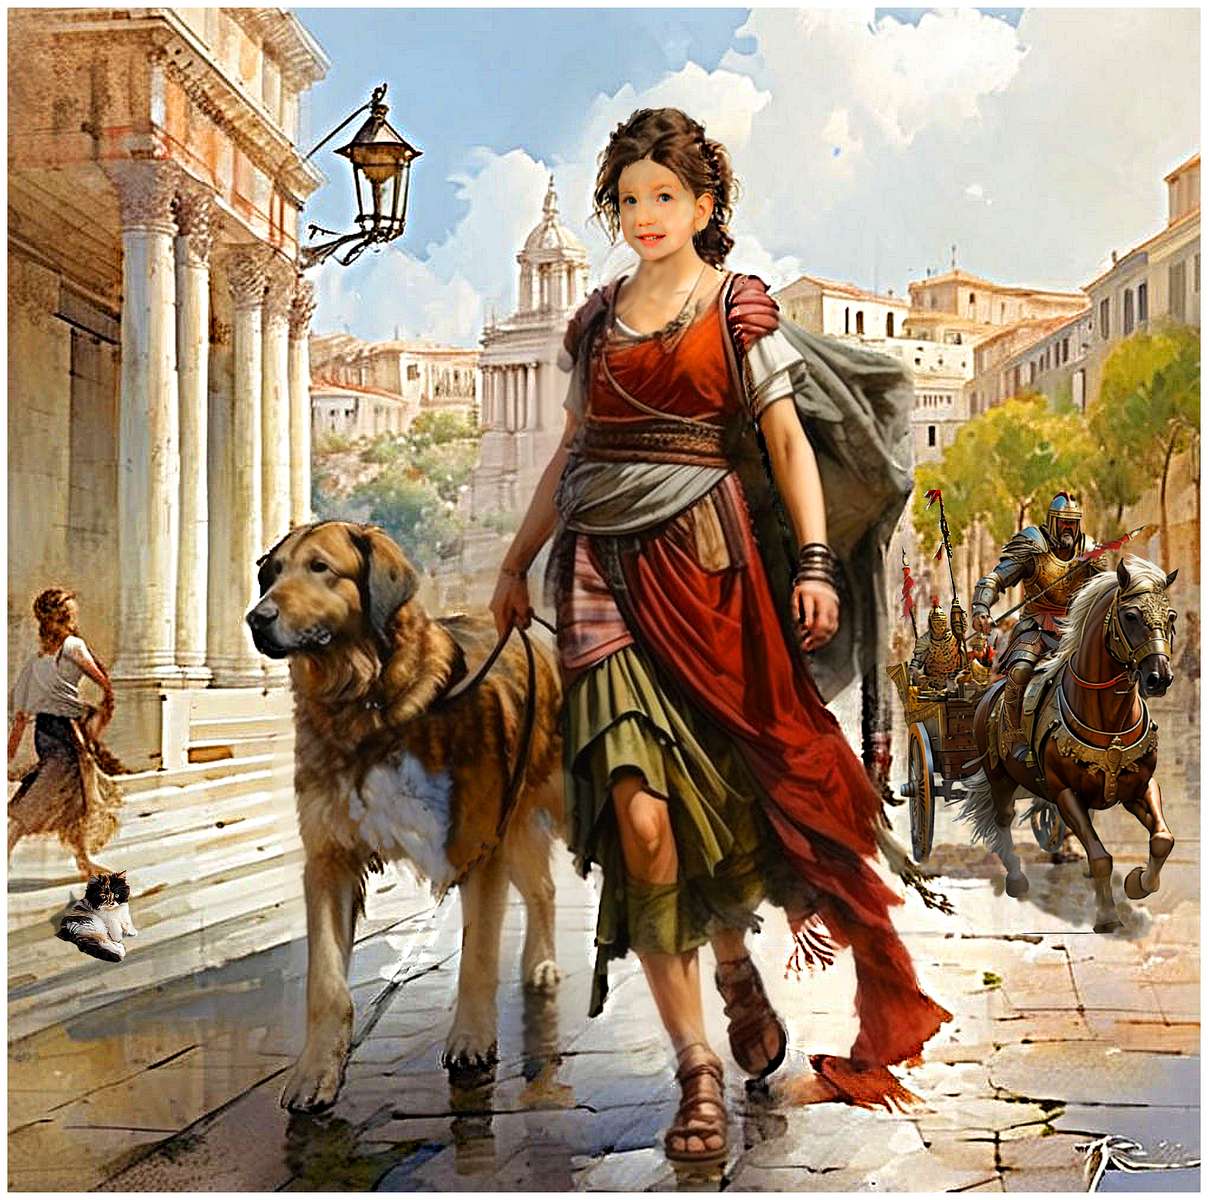 Canis bewaakt zijn minnares tijdens een wandeling in Rome. legpuzzel online